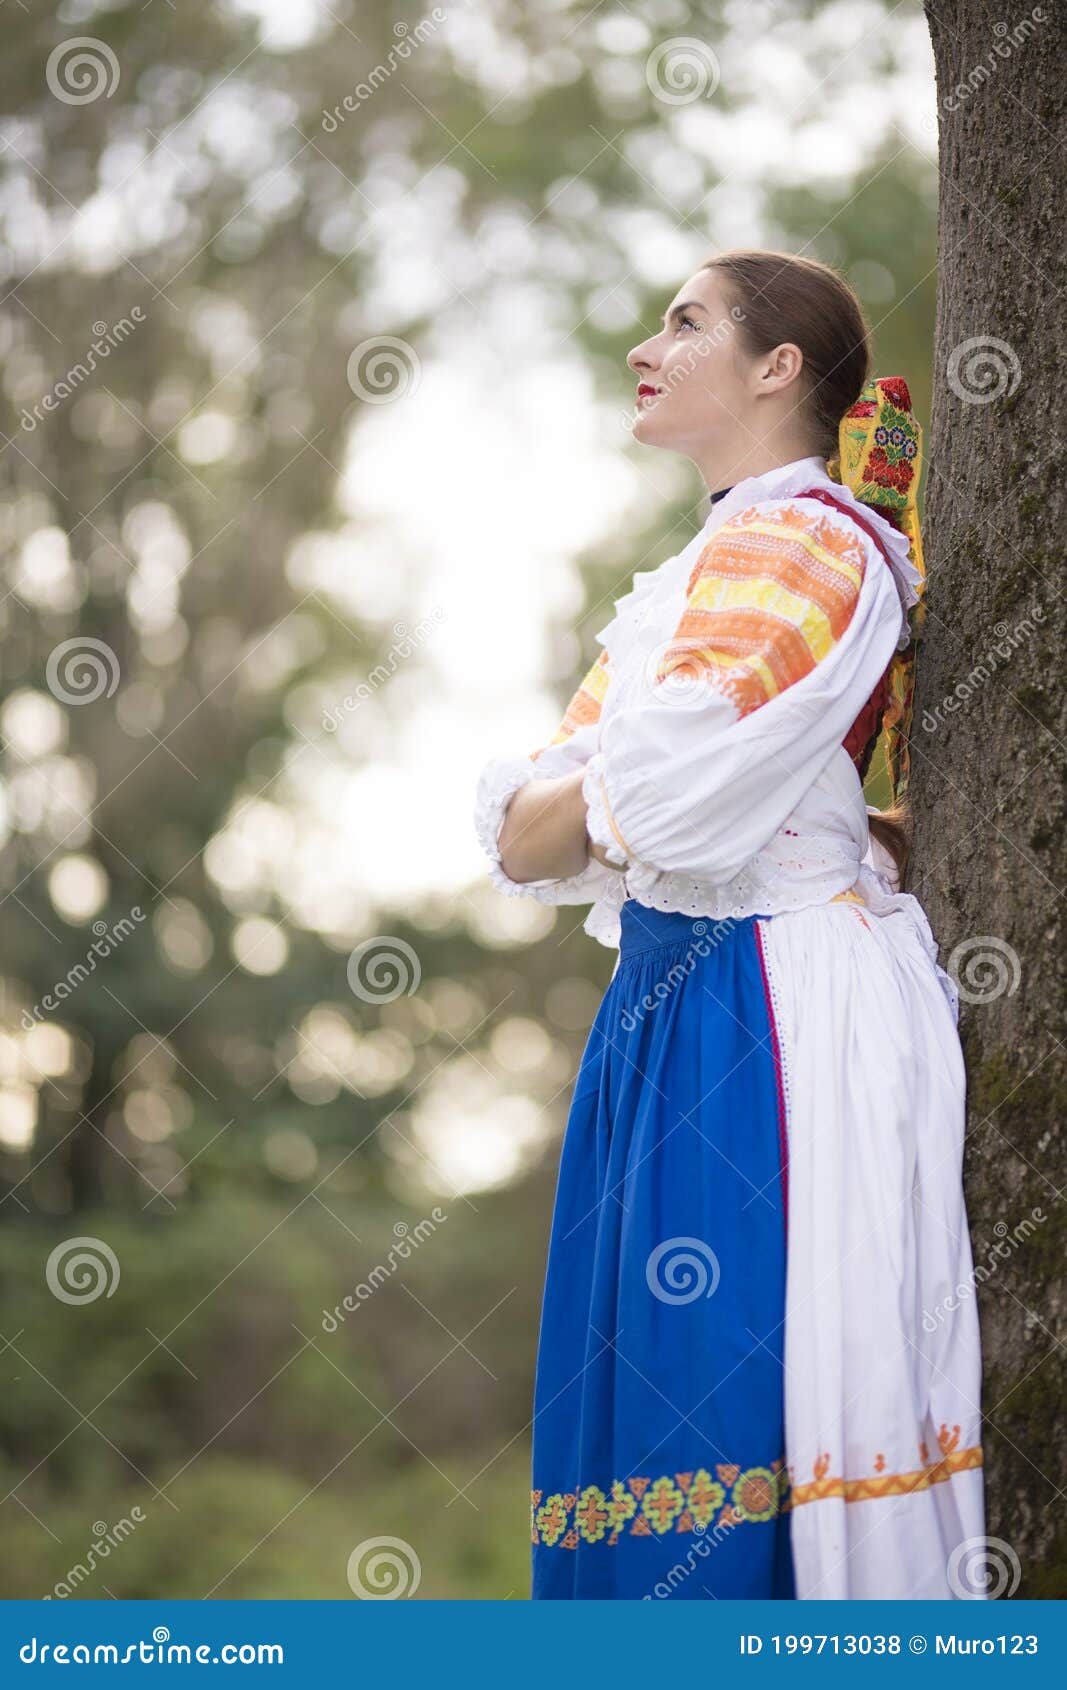 Slovak Folklore. Slovak Folklore Girl. Stock Photo - Image of ethnic ...